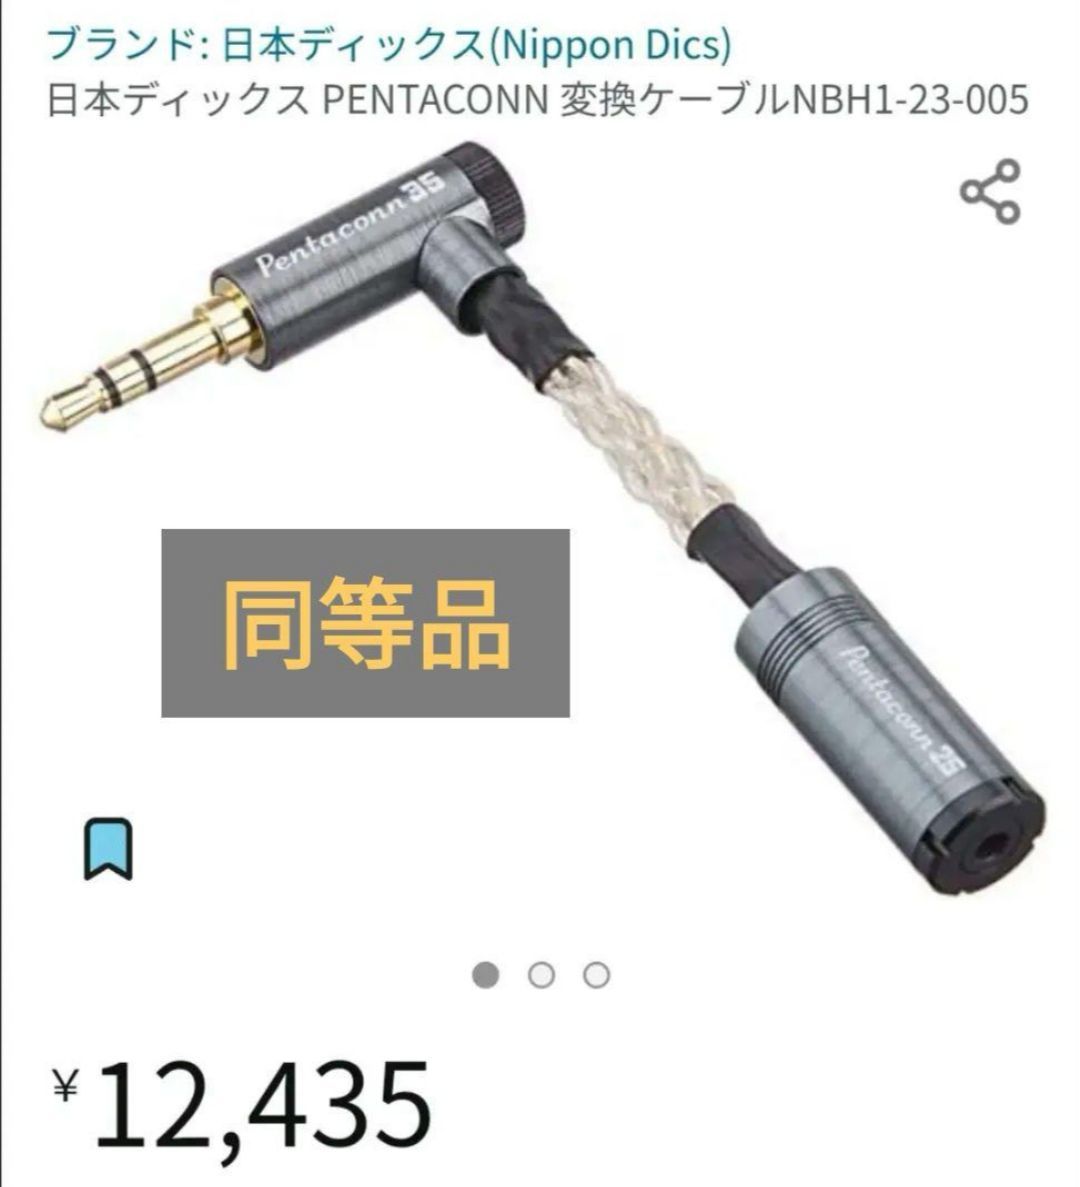 日本ディックス PENTACONN 変換ケーブルNBH1-23-005 - ヘッドホン